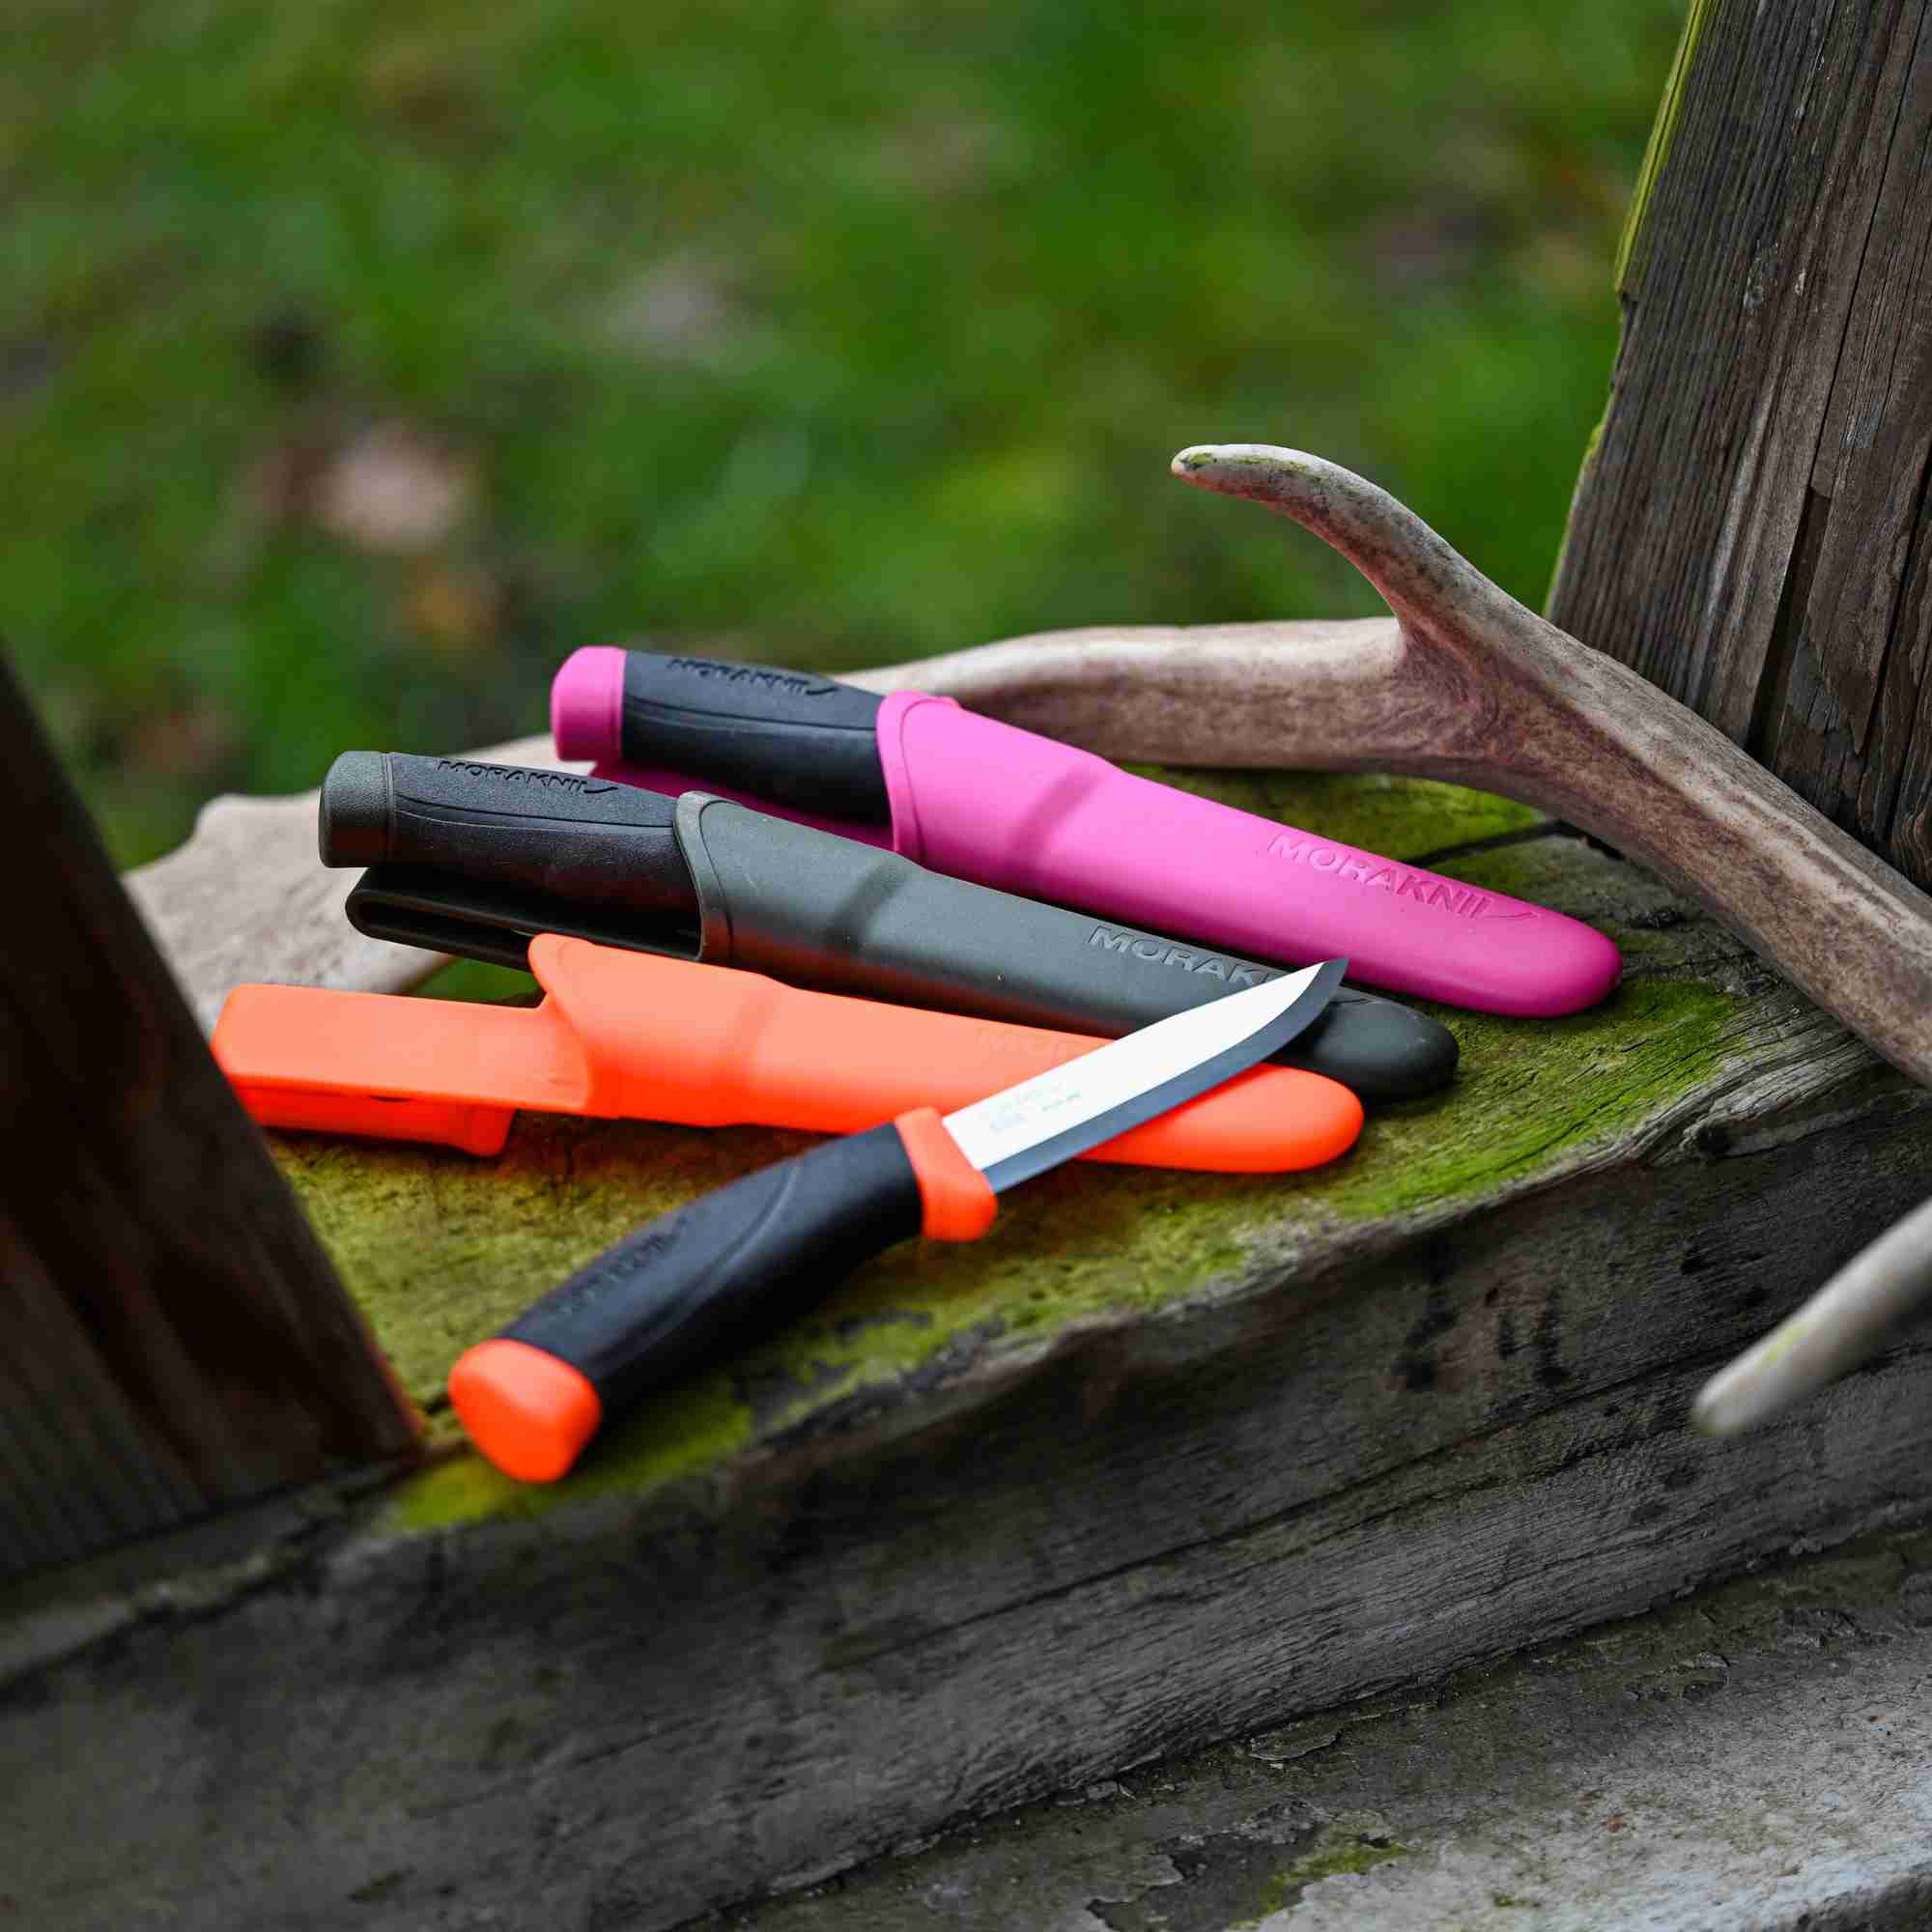 Jagdmesser in den Farben orange, pink und grün mit individueller Gravur